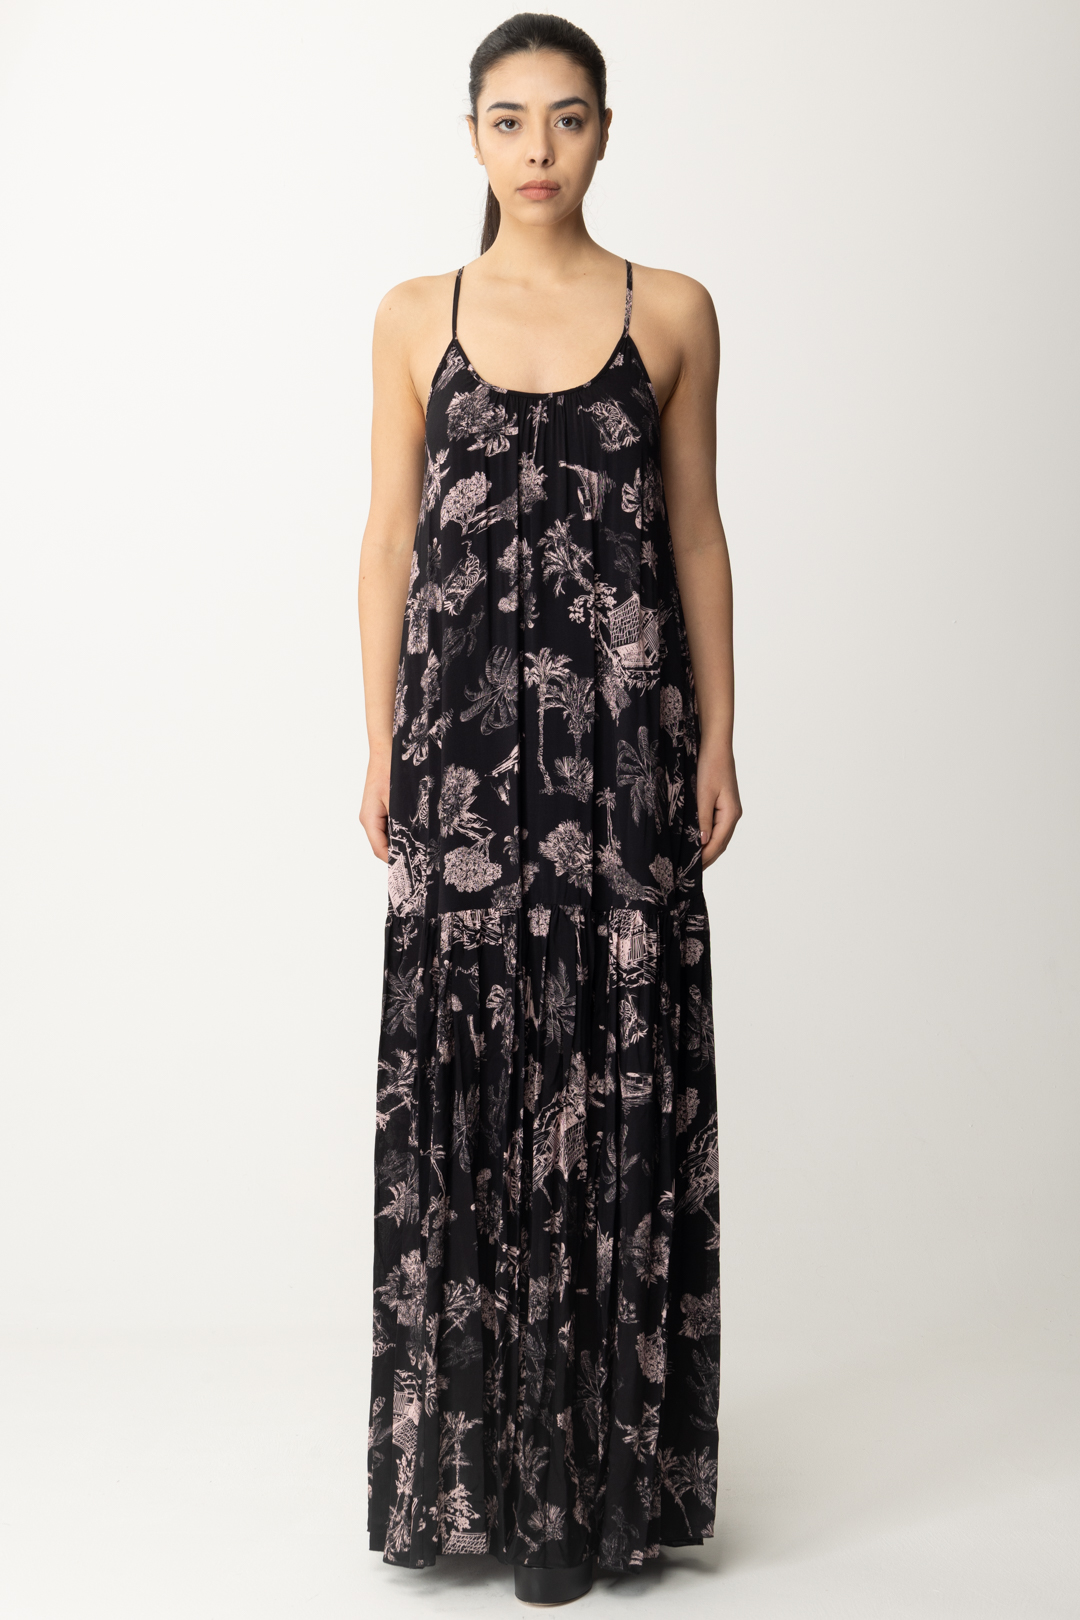 Vorschau: Aniye By Langes Kleid mit Tula-Print und Hosenträgern BLACK HAWAII